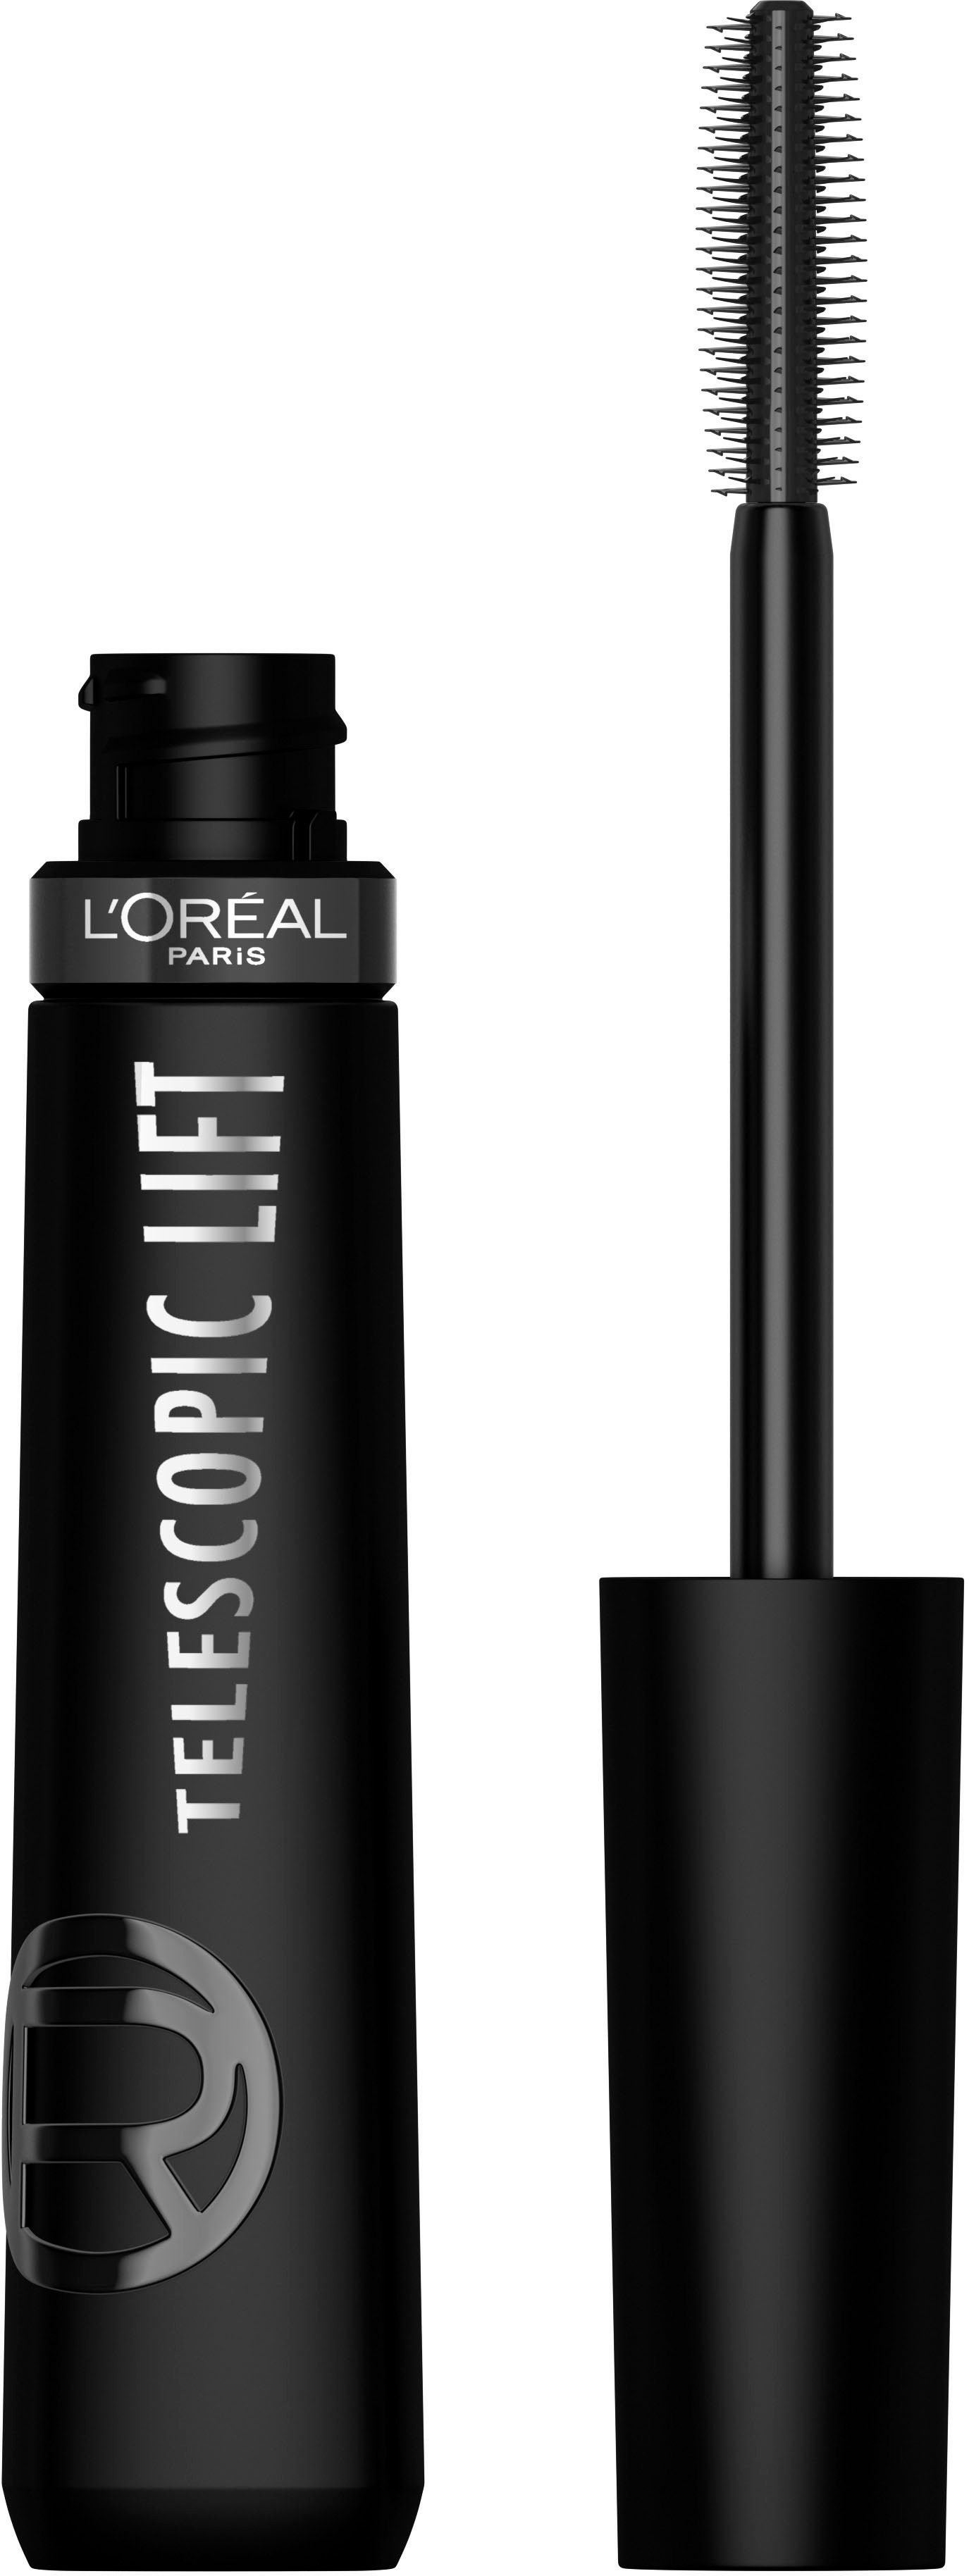 L'ORÉAL PARIS Mascara L'Oréal Paris Telescopic Lift Extra Black Mascara, Wimperntusche mit Lifting-Effekt | Mascara